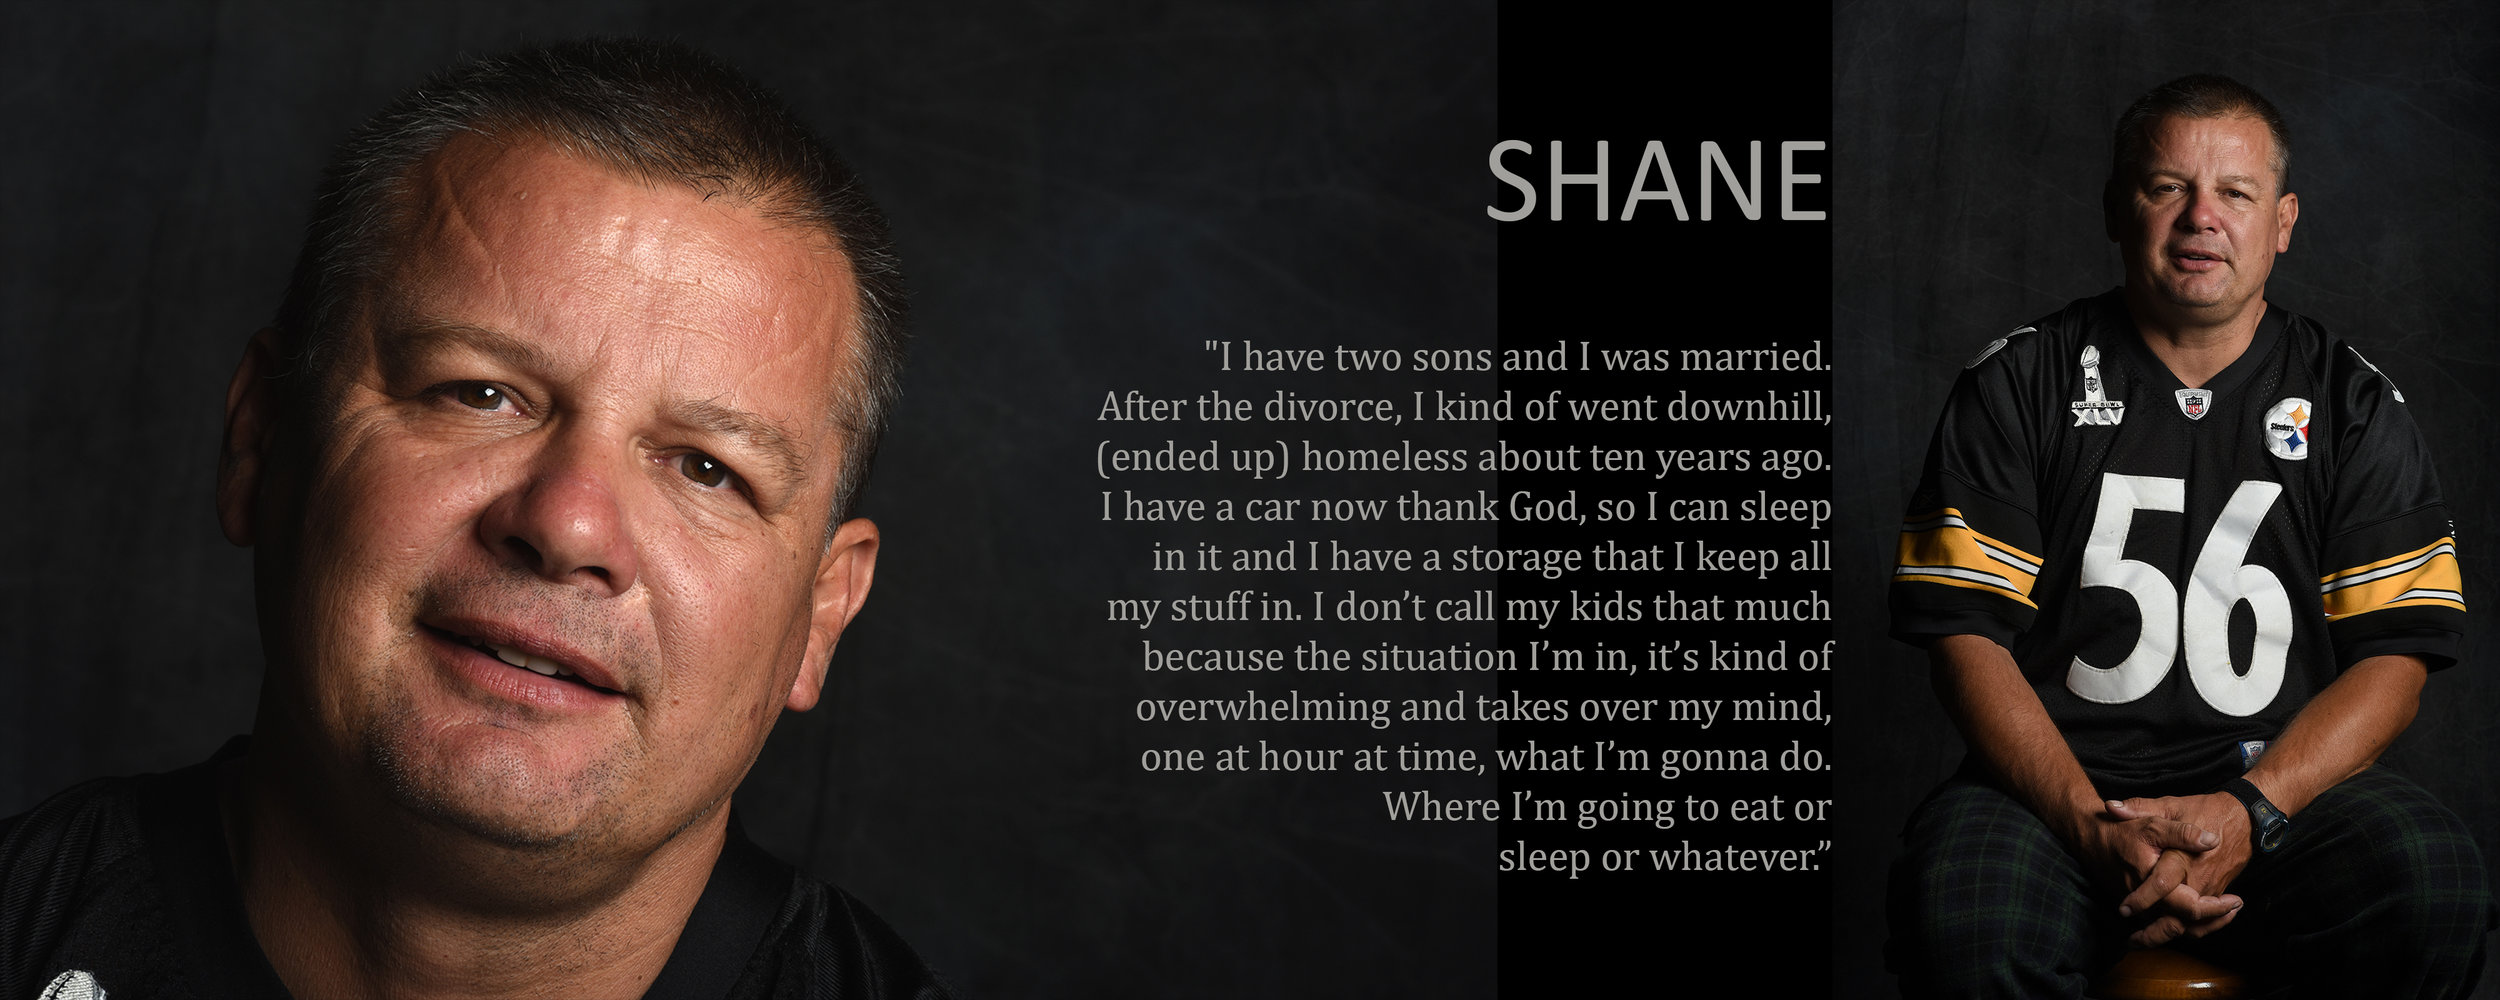   Shane interview  